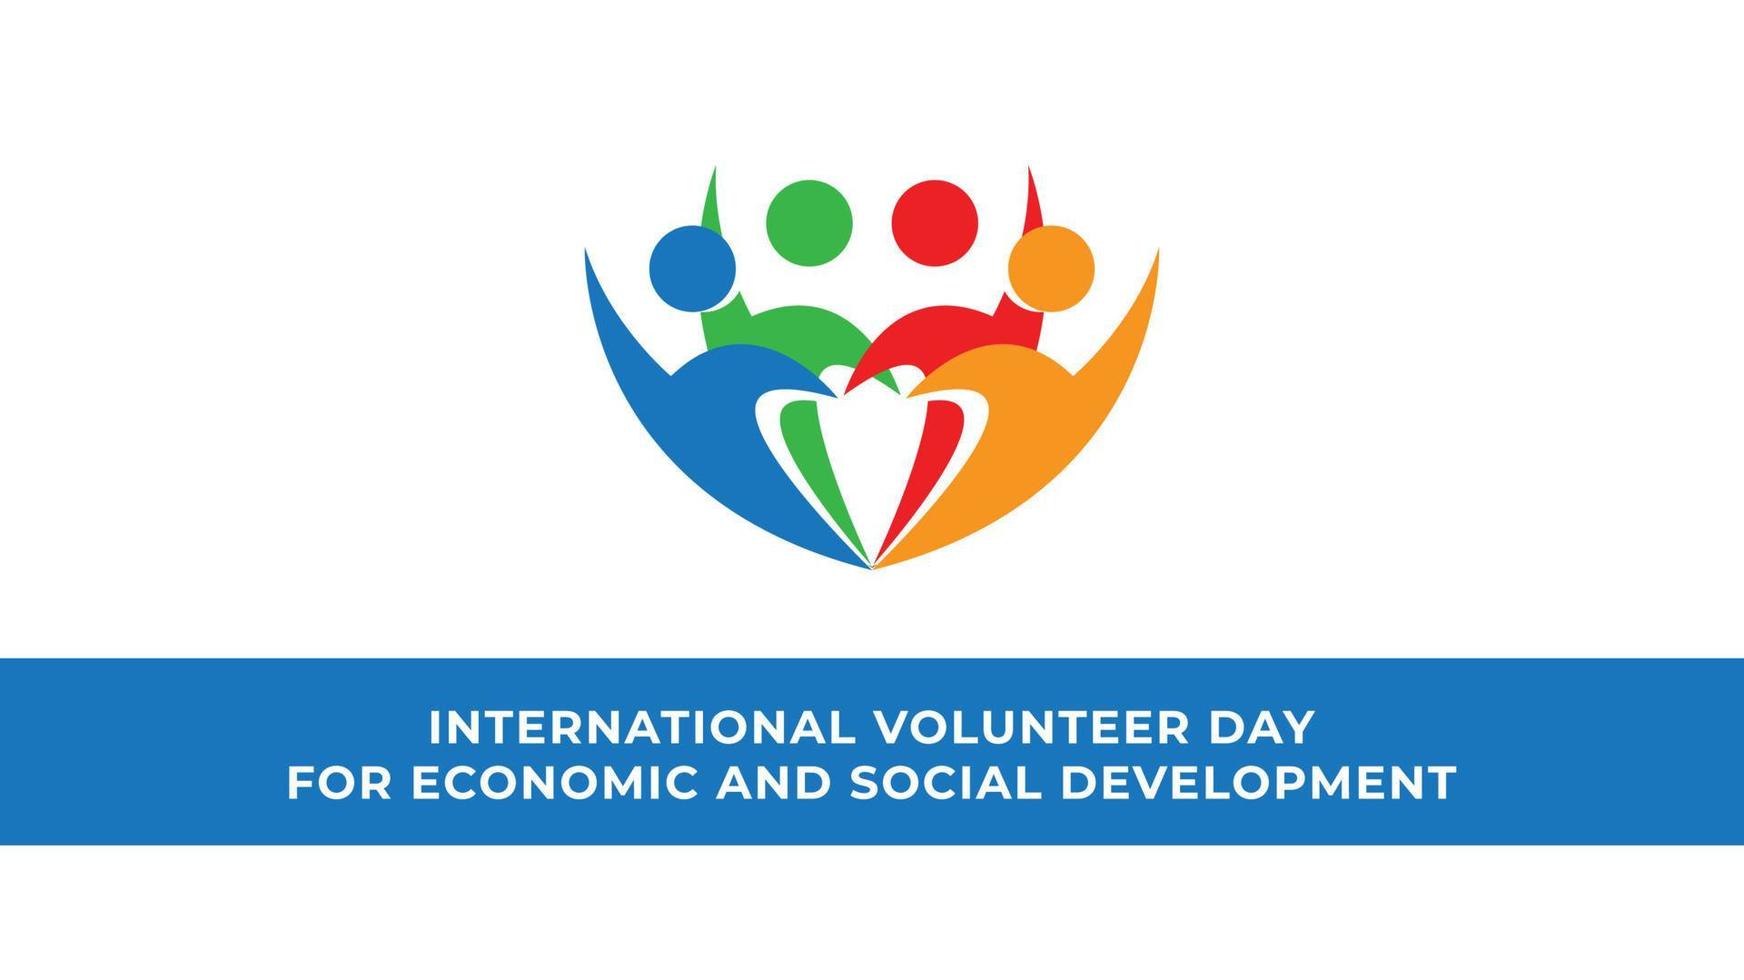 journée internationale des volontaires pour le développement économique et social. illustration vectorielle vecteur